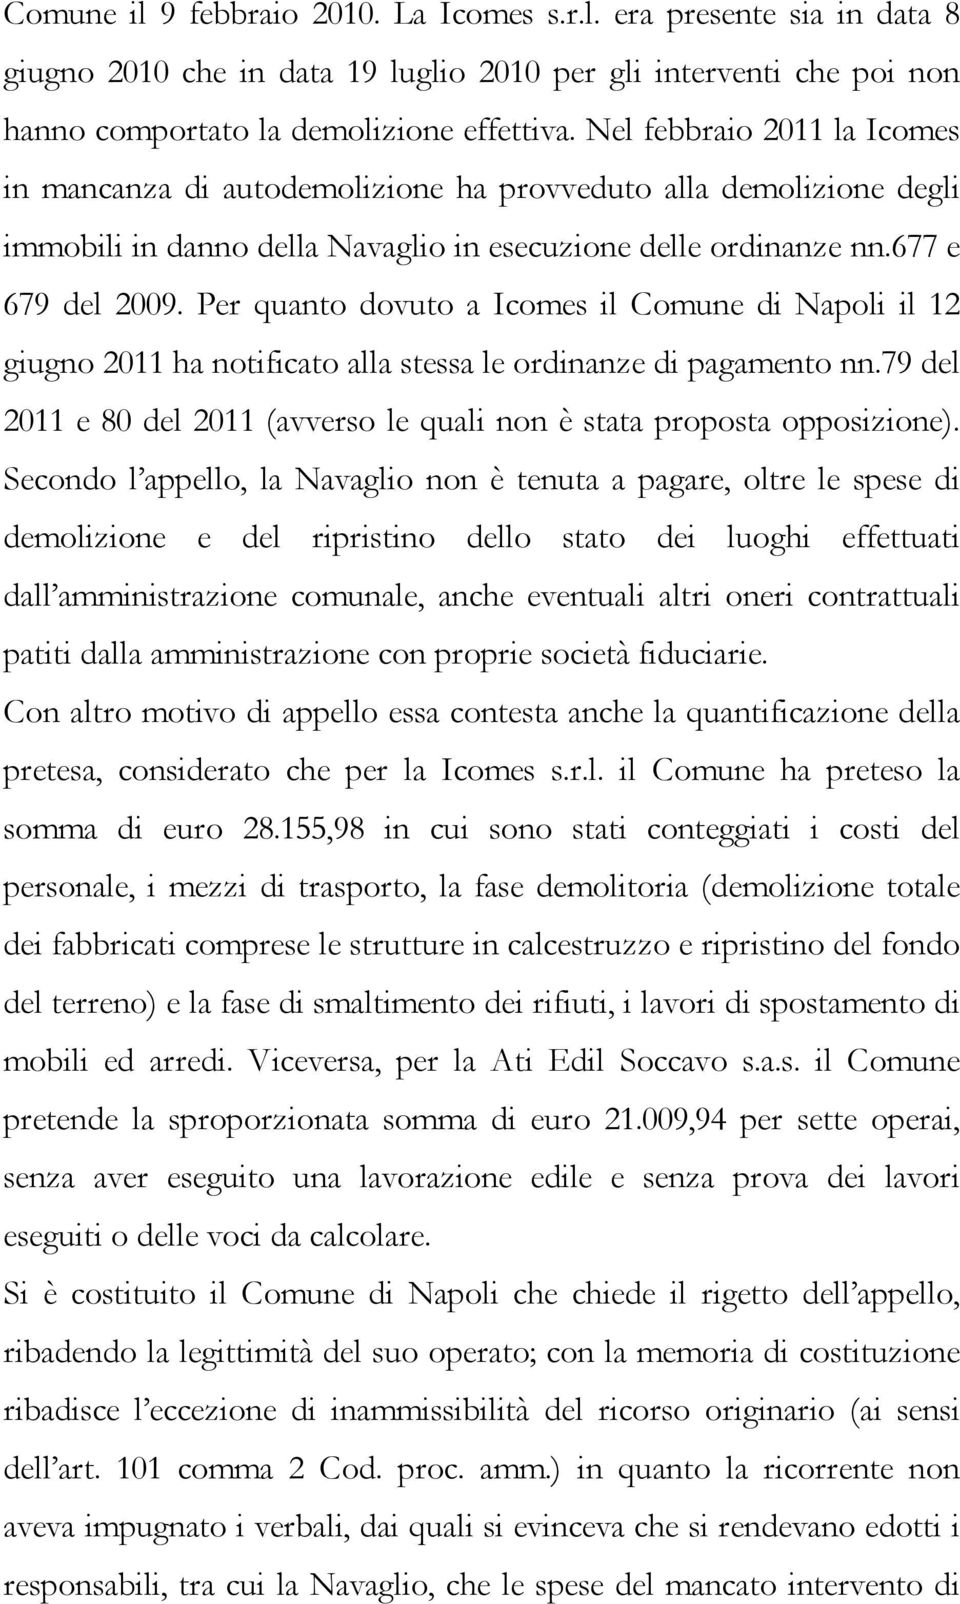 Per quanto dovuto a Icomes il Comune di Napoli il 12 giugno 2011 ha notificato alla stessa le ordinanze di pagamento nn.79 del 2011 e 80 del 2011 (avverso le quali non è stata proposta opposizione).